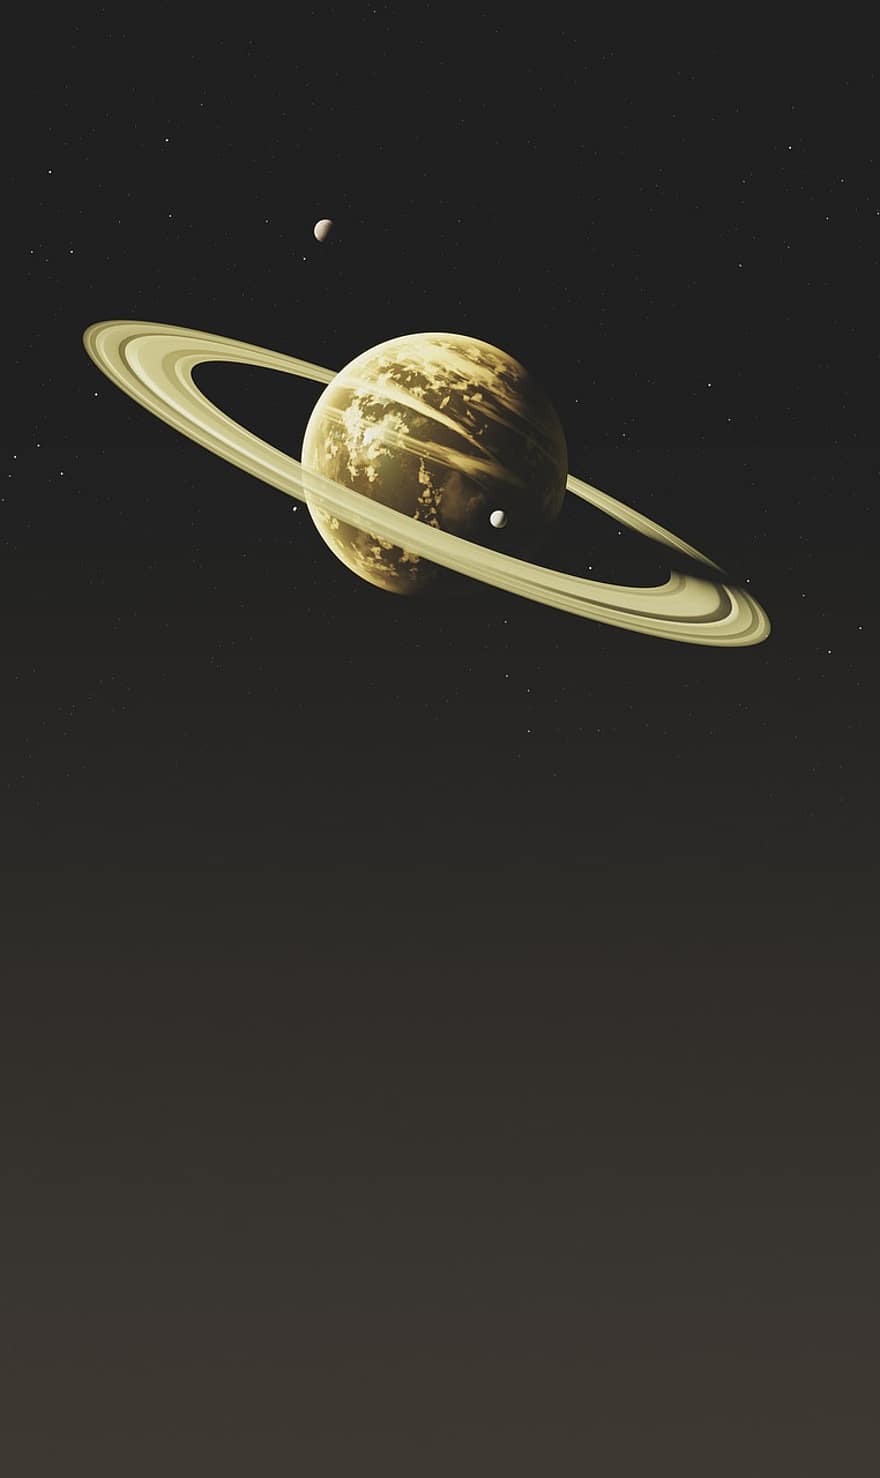 Saturnus, planeetta, tila, taivaankappale, aurinkokunta, maailmankaikkeus, galaksi